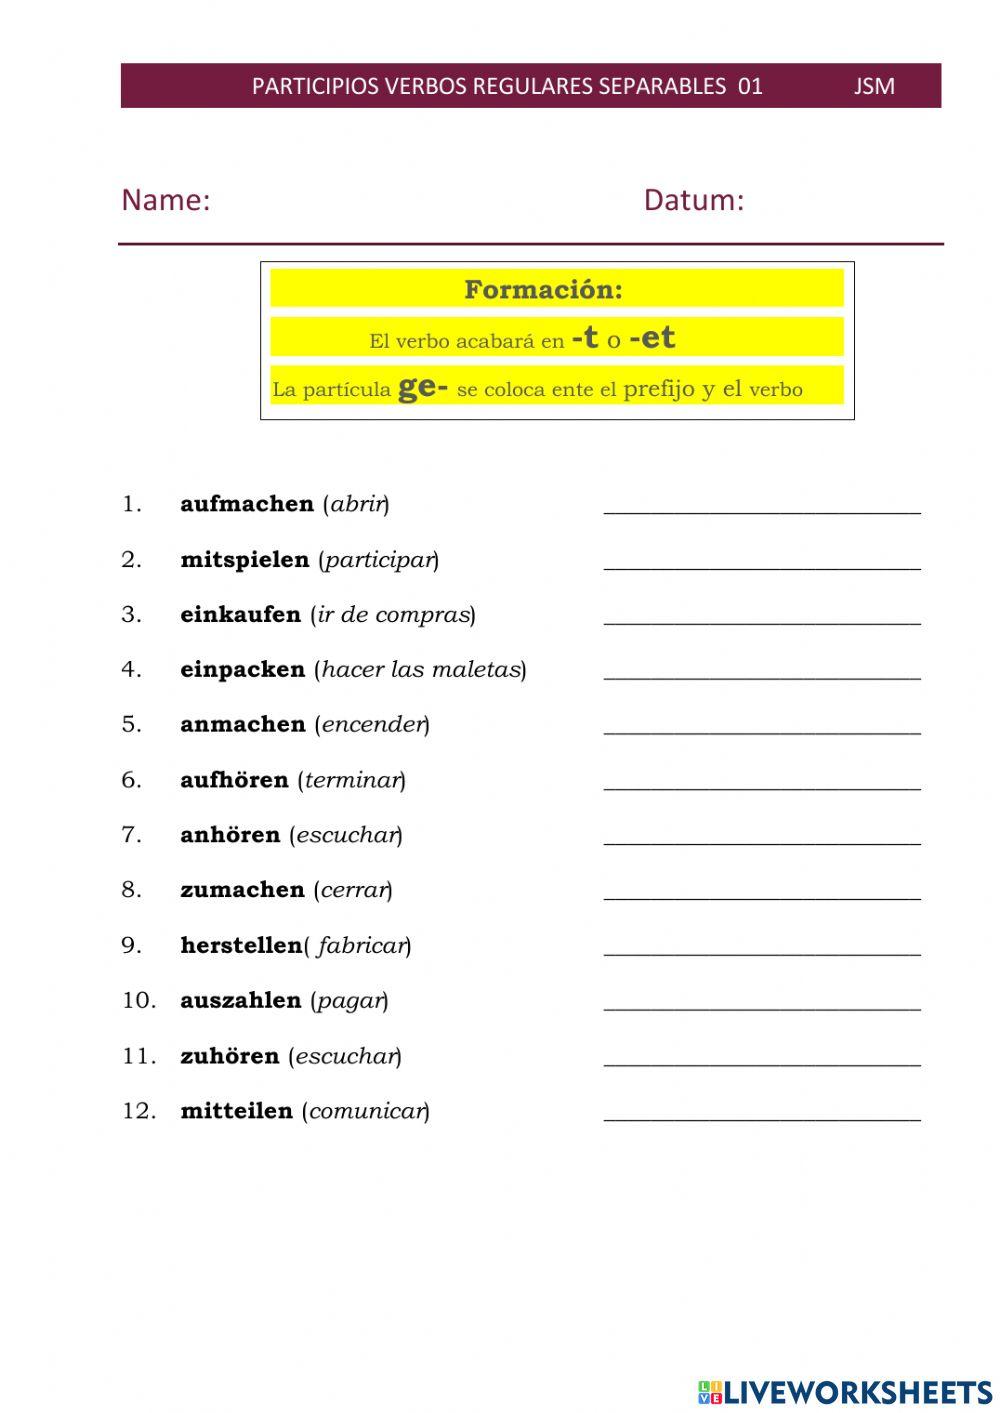 Participios verbos separables regulares 01 (desplegable)